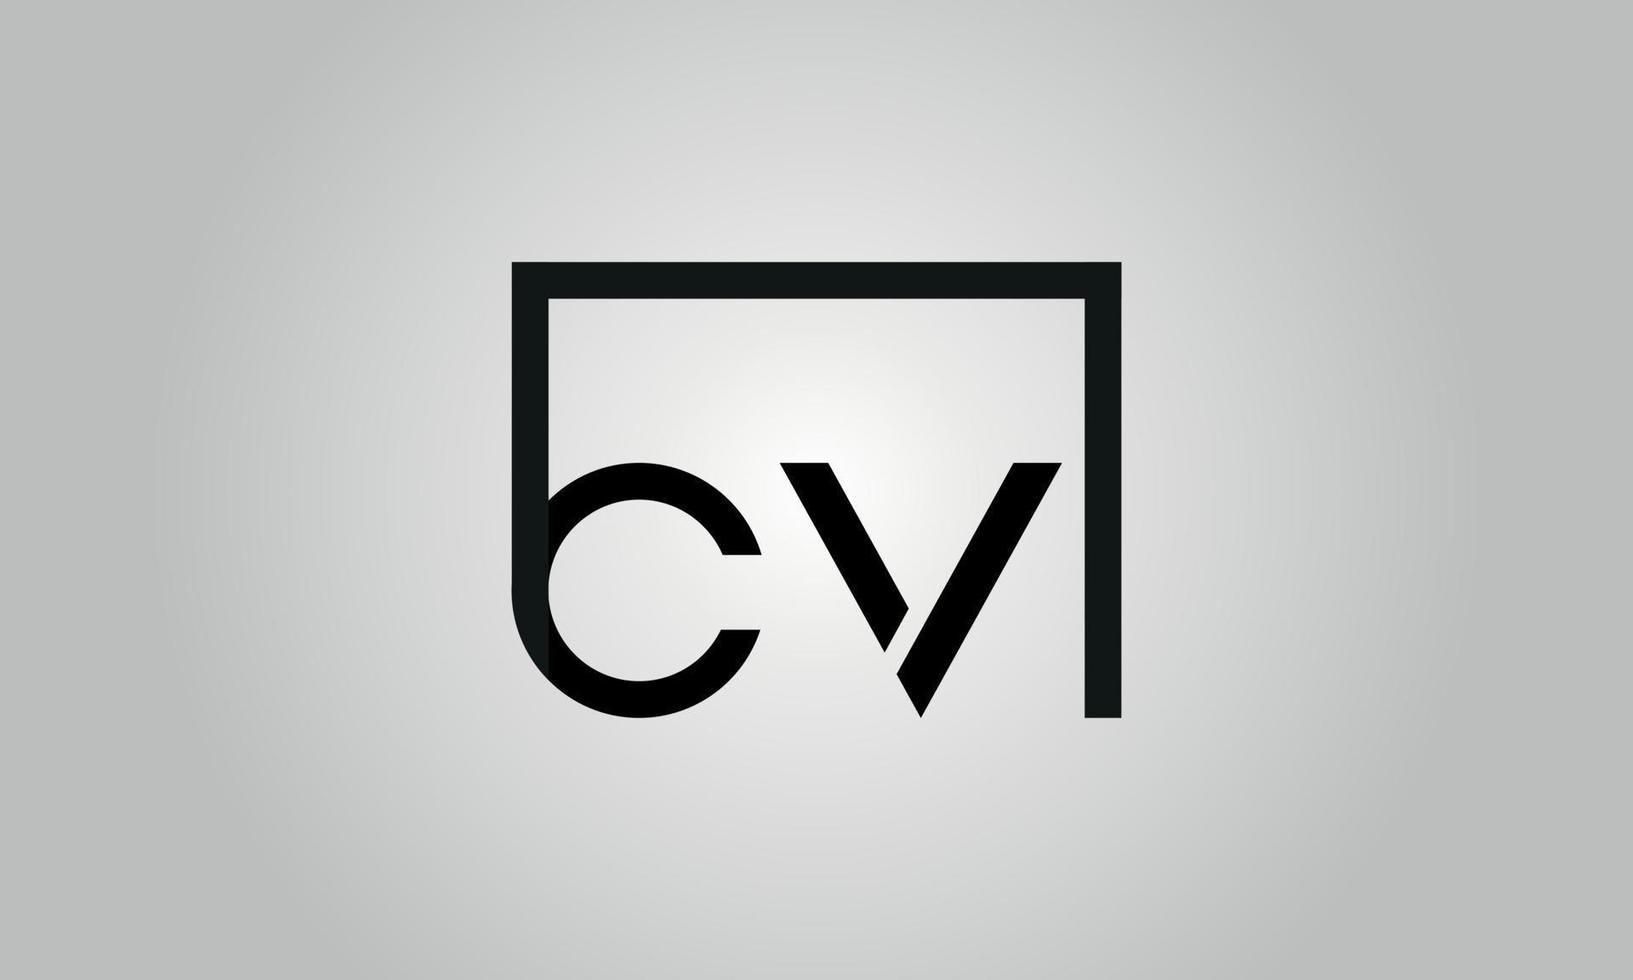 brief CV logo ontwerp. CV logo met plein vorm in zwart kleuren vector vrij vector sjabloon.